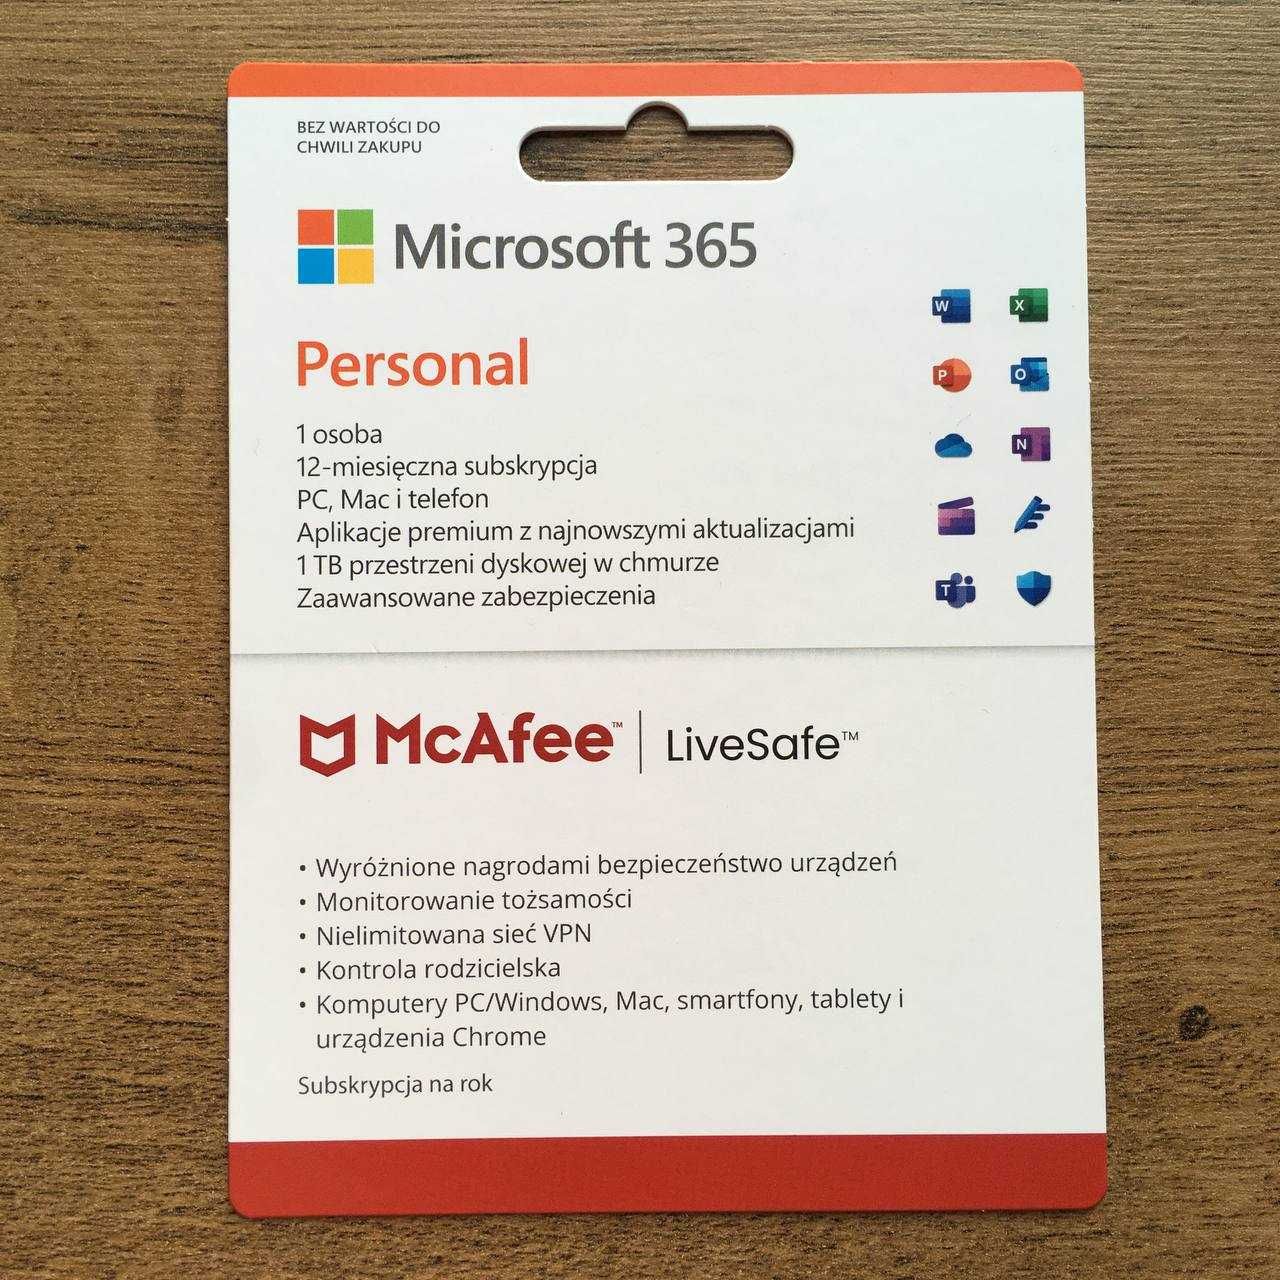 Microsoft Office 365 Personal + McAfee LiveSafe - roczna subskrypcja